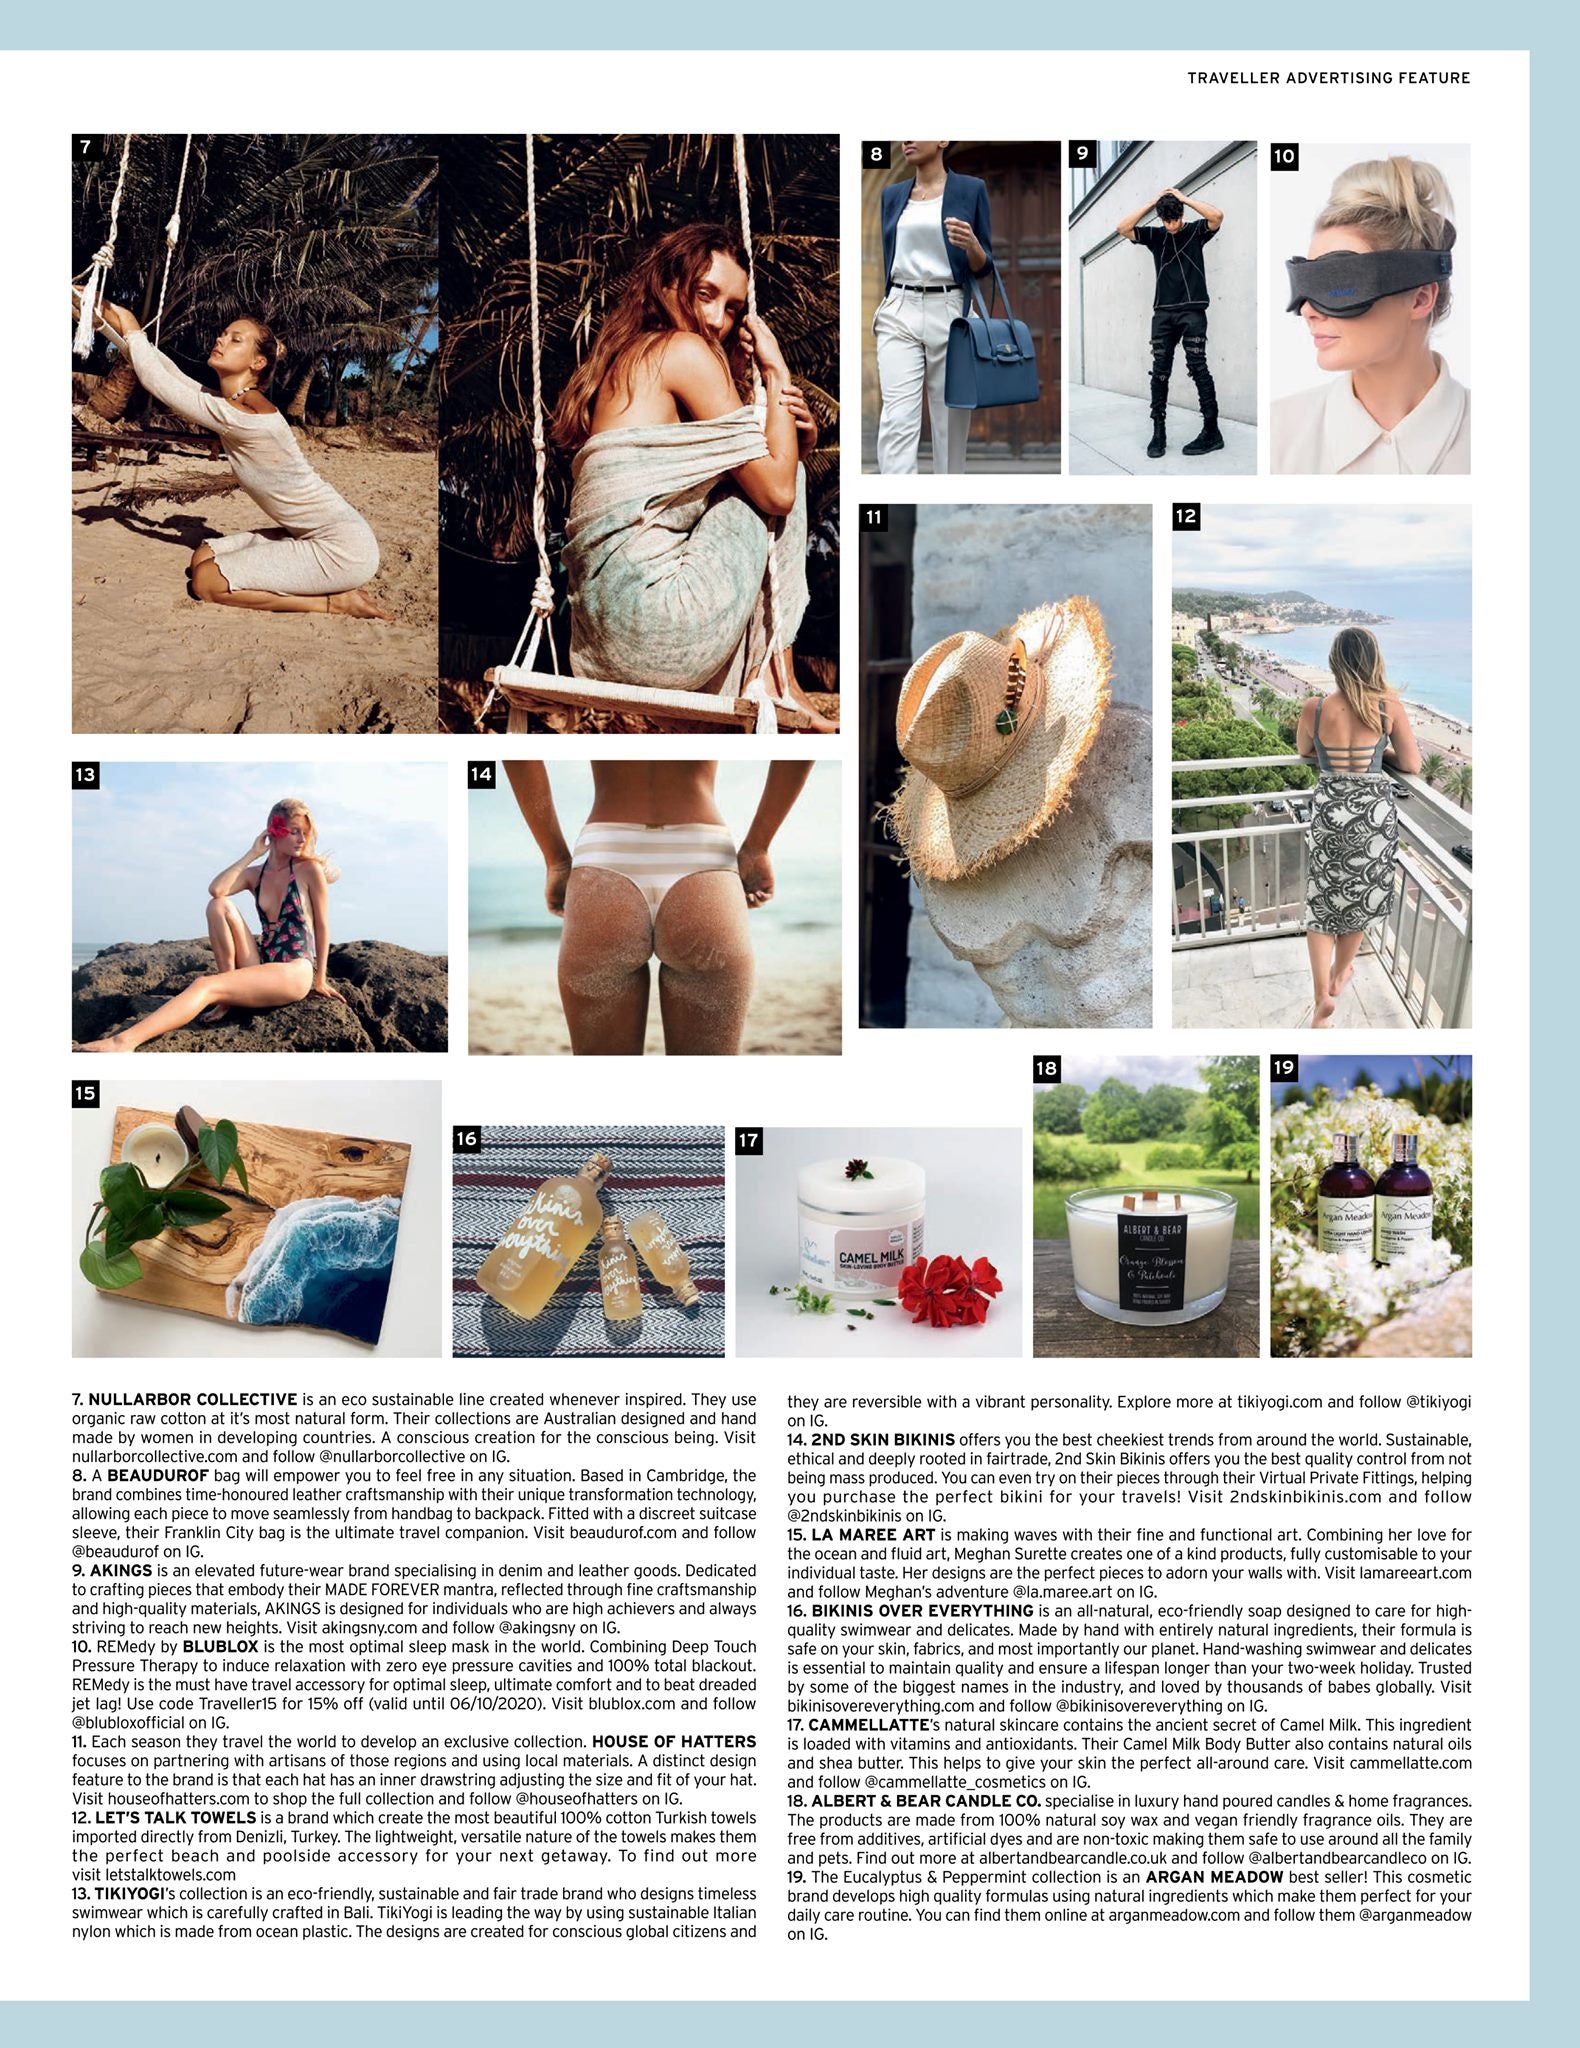 TIKIYOGI® As seen in Condé Nast Traveller - October Issue